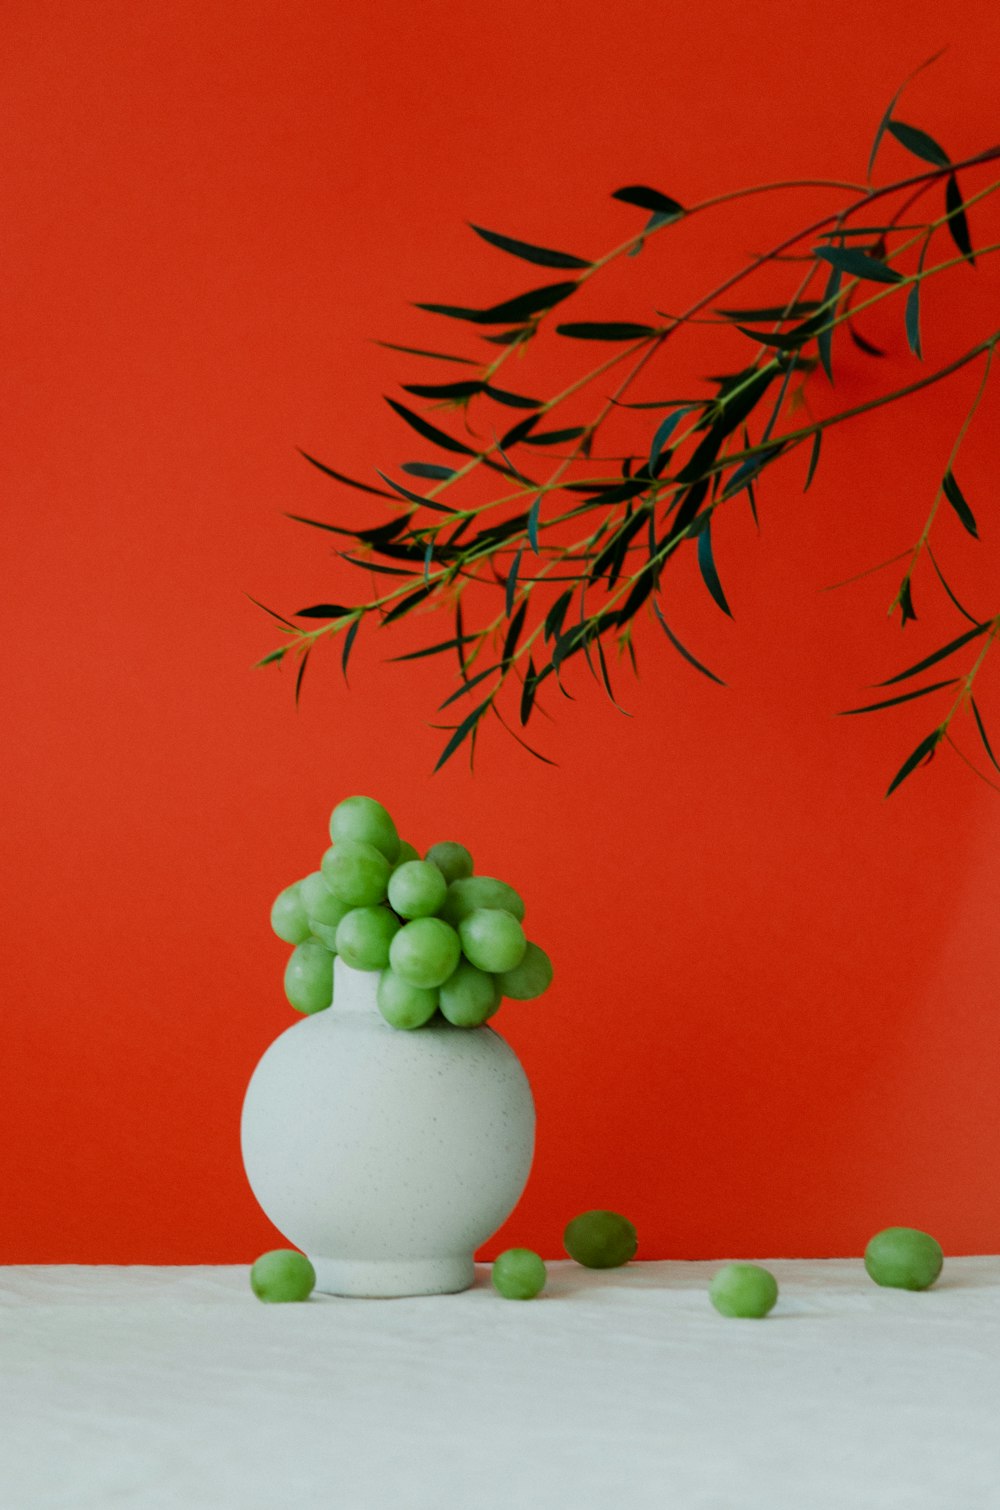 テーブルの上に緑のブドウが入った白い花瓶